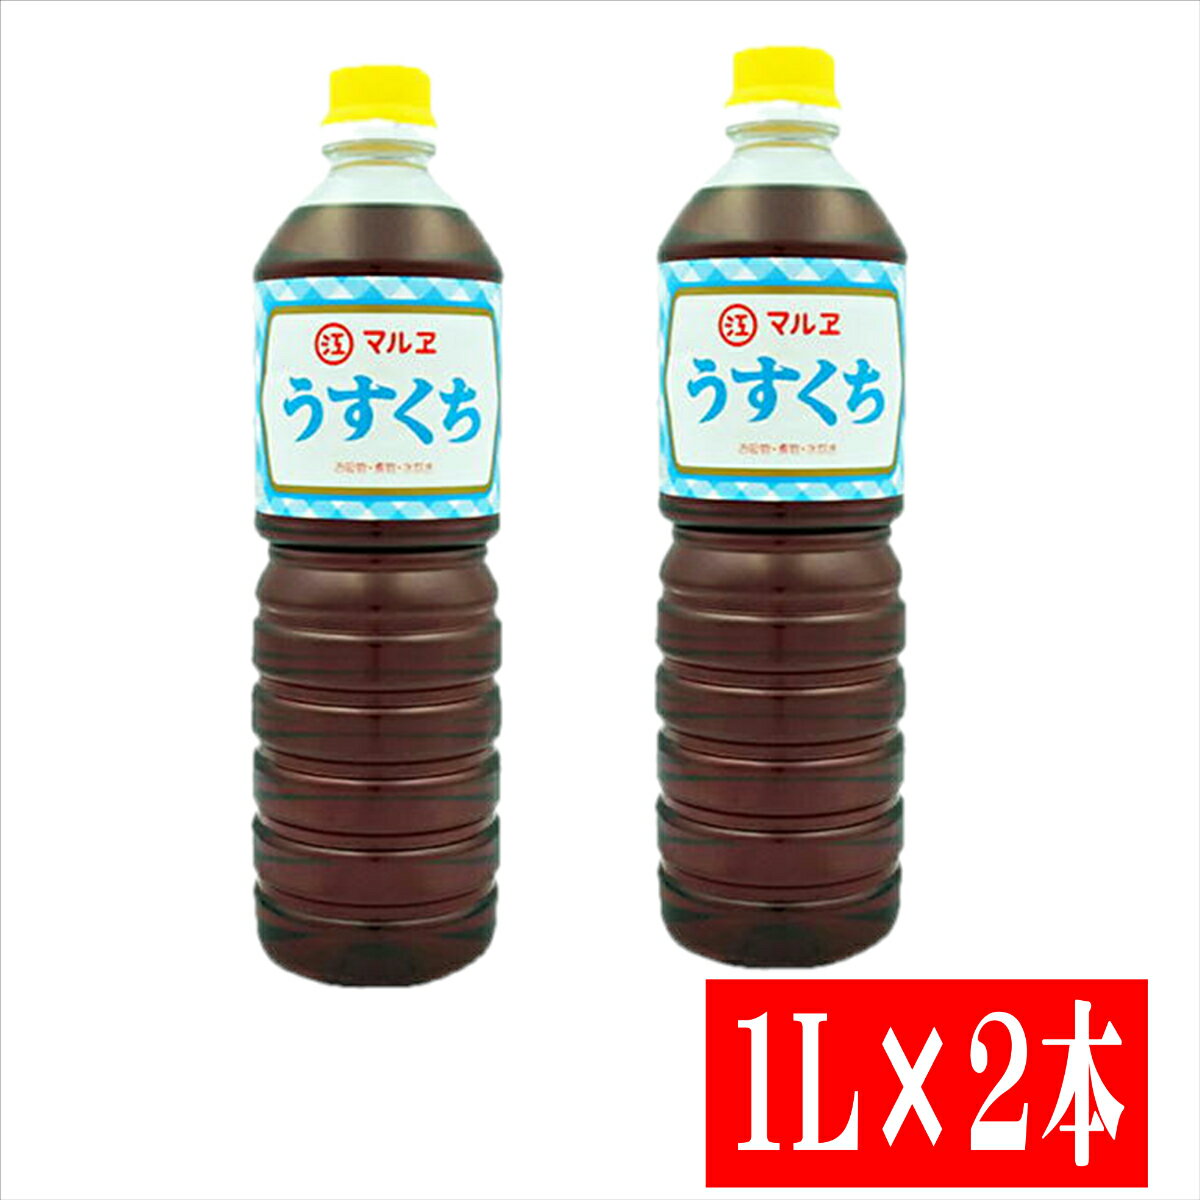 マルエ うすくち醤油 1L×2本【送料無料 九州 うすくち醤